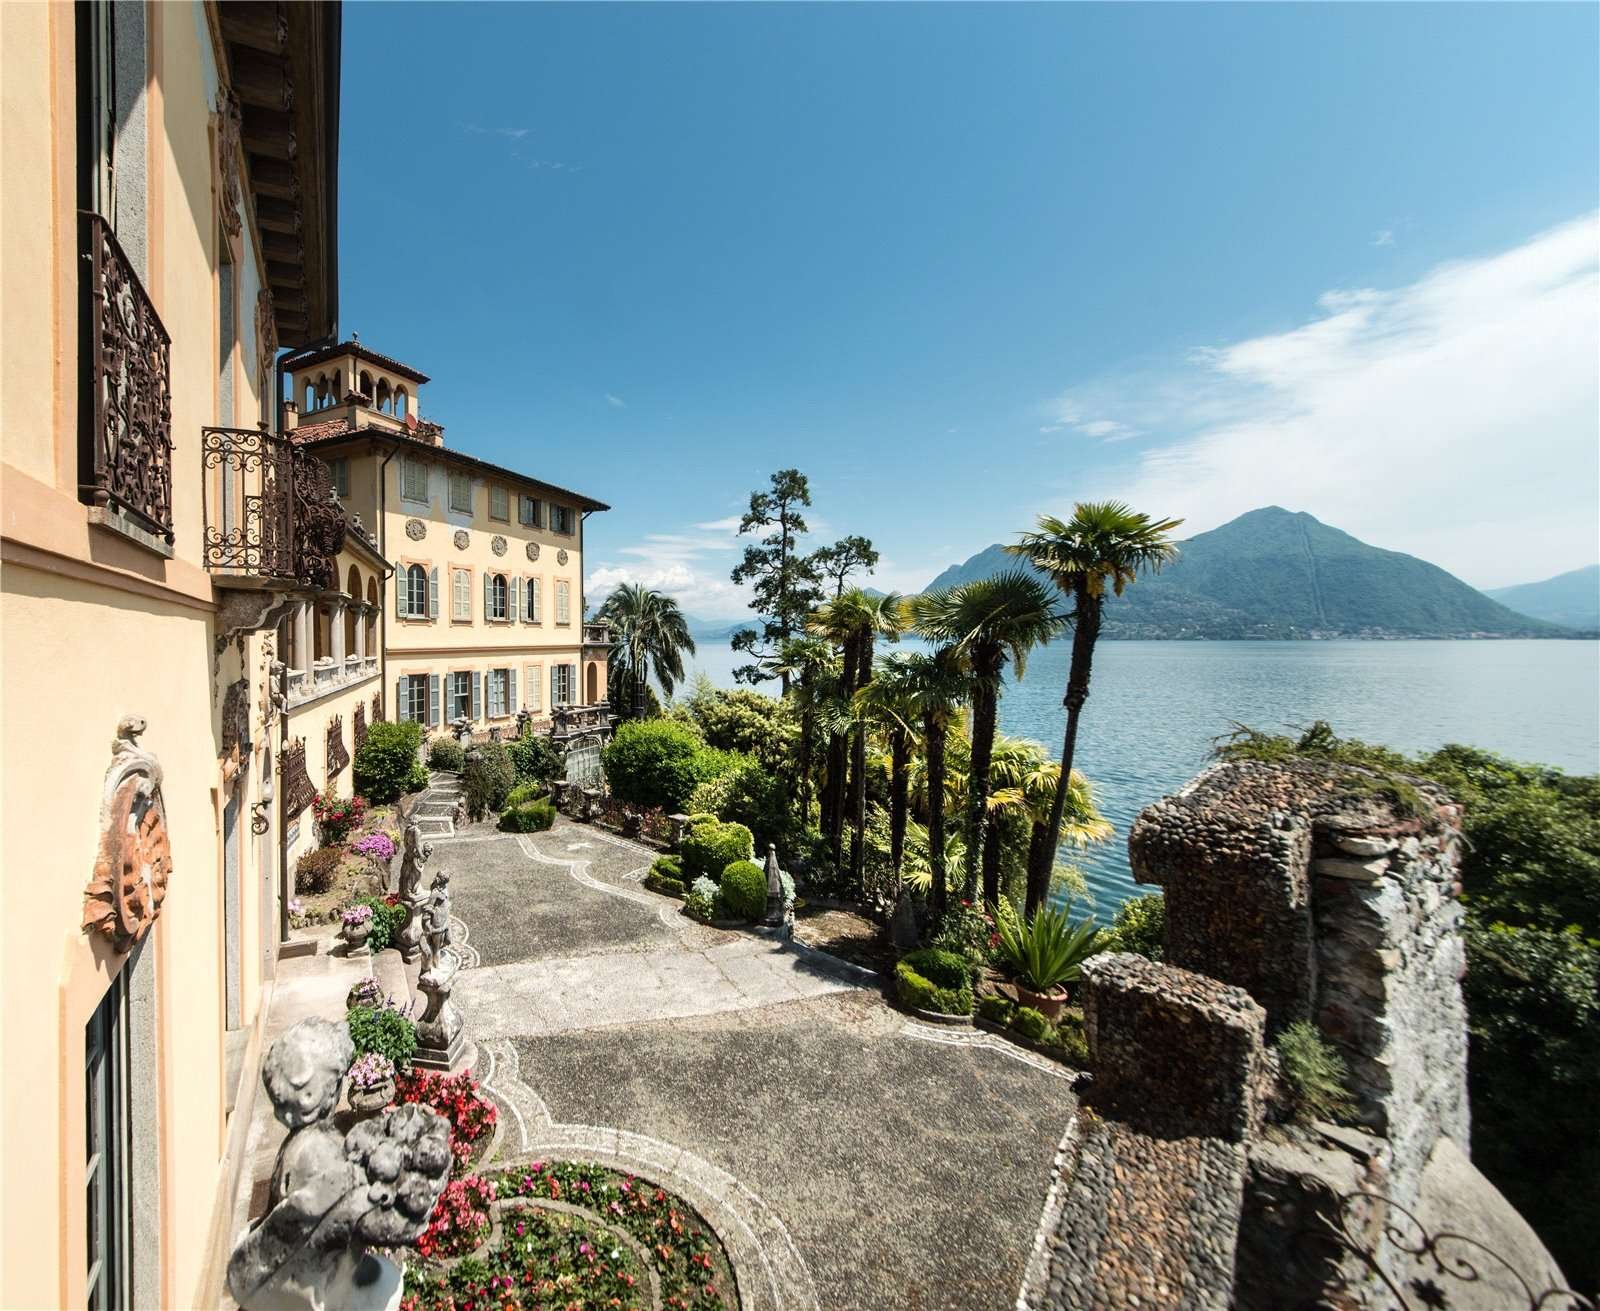 Francis YorkVilla L'Eremitaggio: Historic Villa On Lake Maggiore 10.jpg